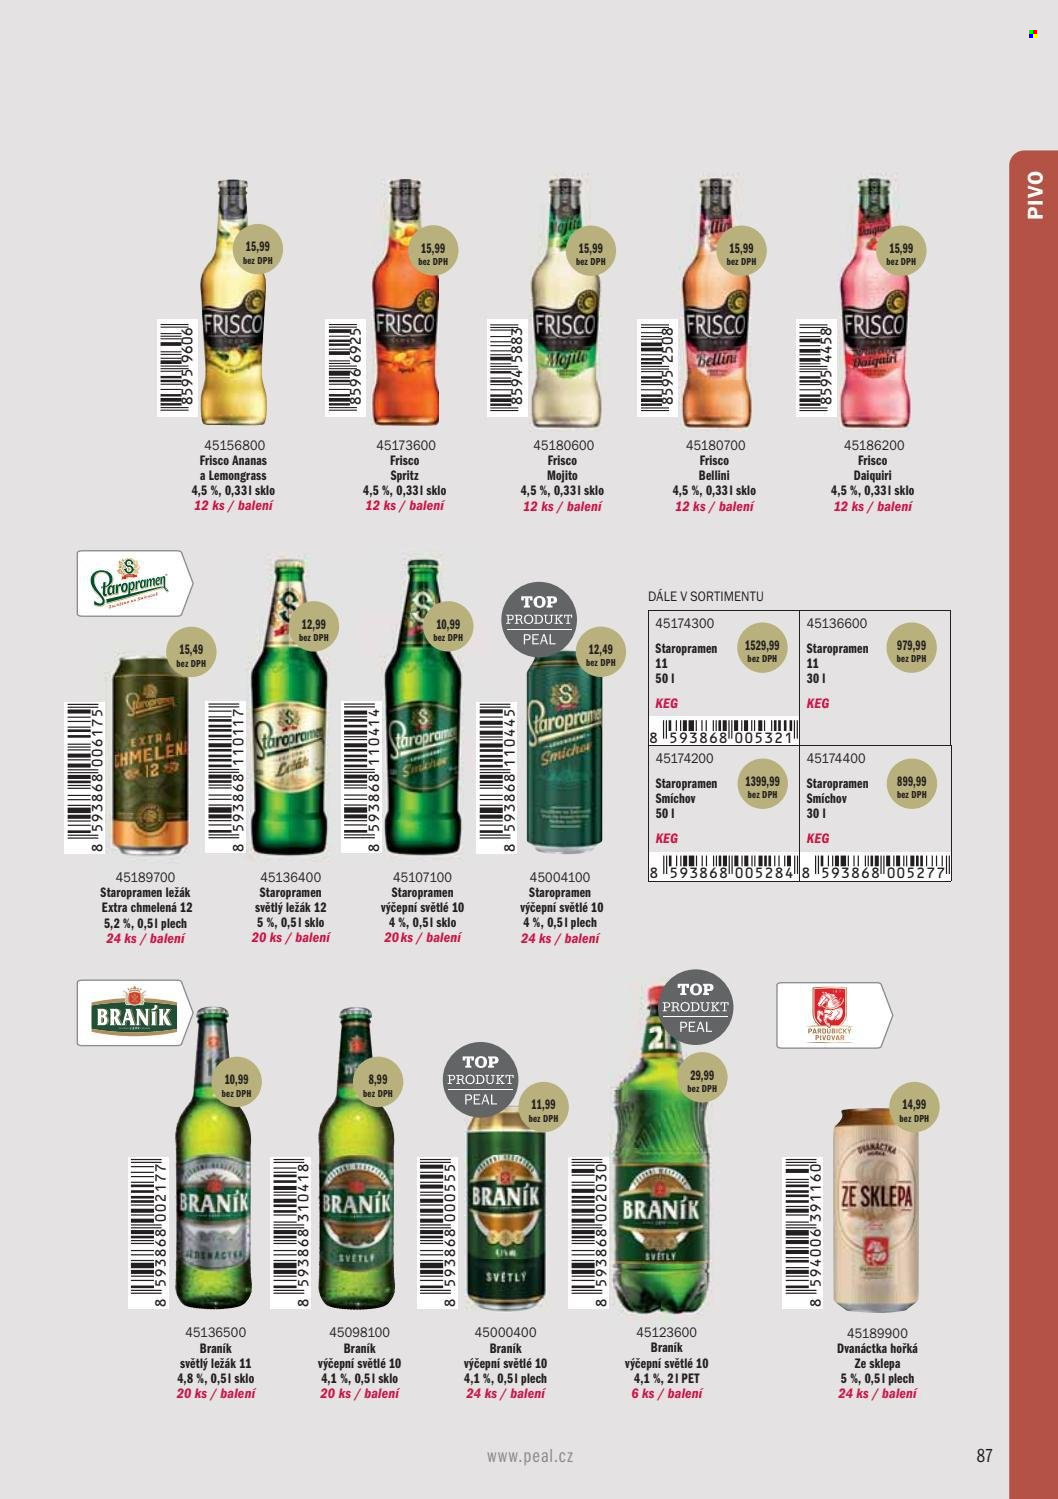 Leták PEAL - Produkty v akci - světlé pivo, Staropramen, Braník, světlý ležák, ležák, pivo, alkohol, cider, Frisco, mojito. Strana 89.